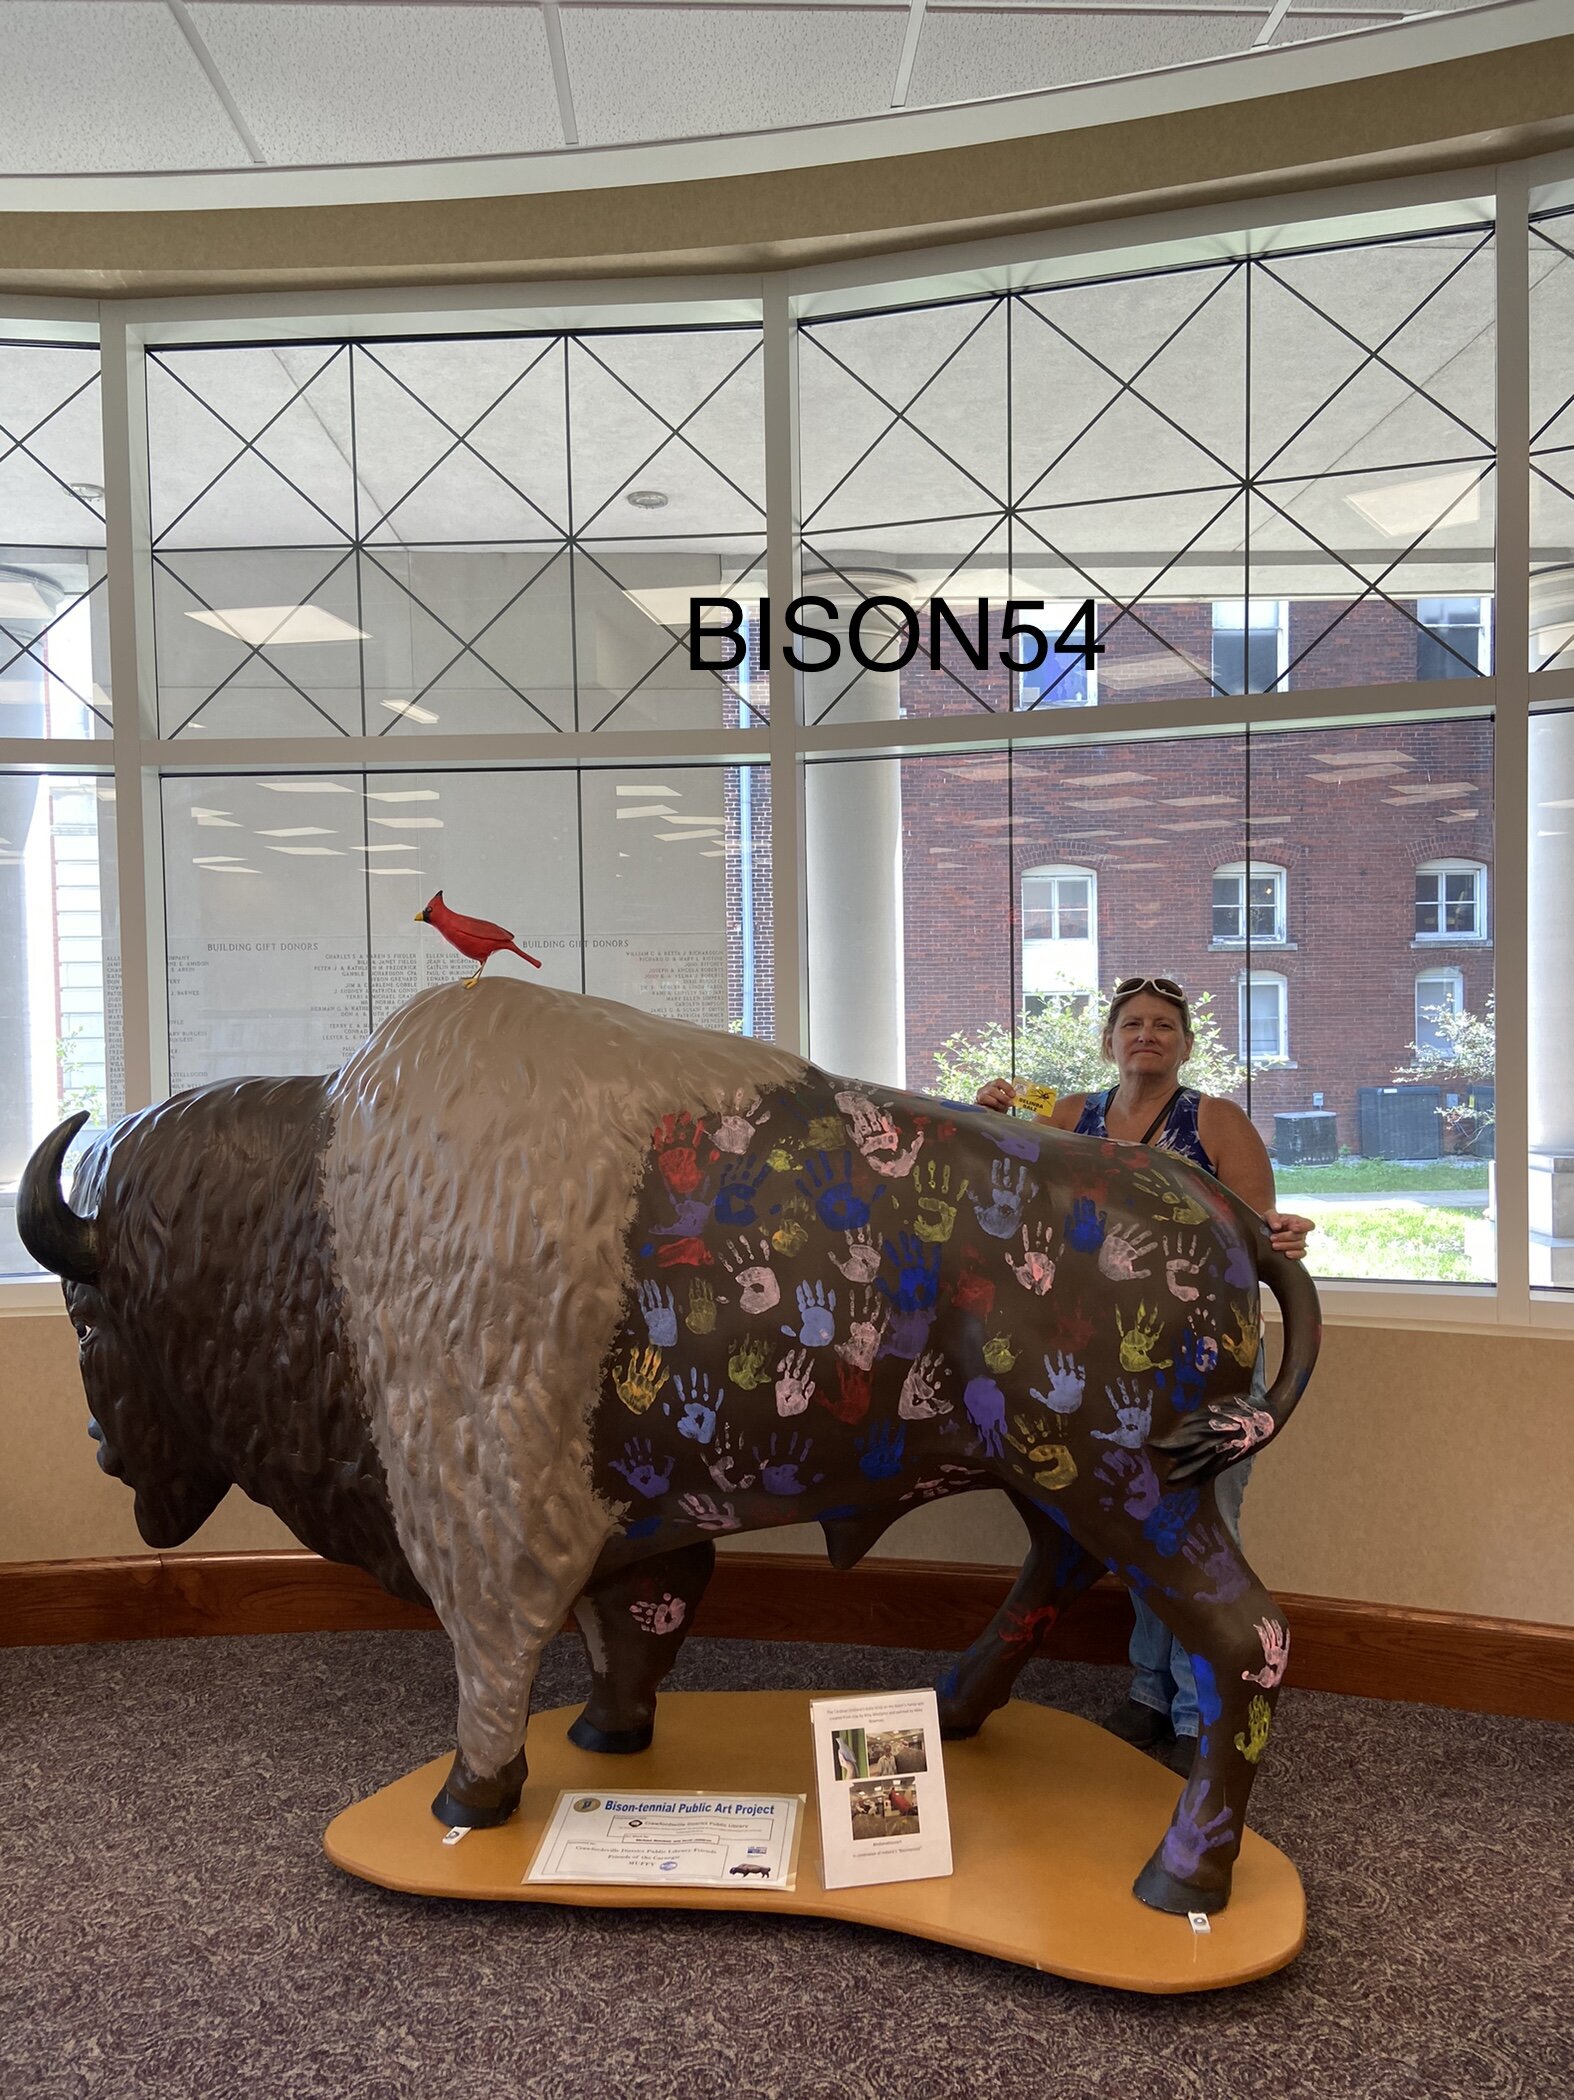 bison54b.jpg